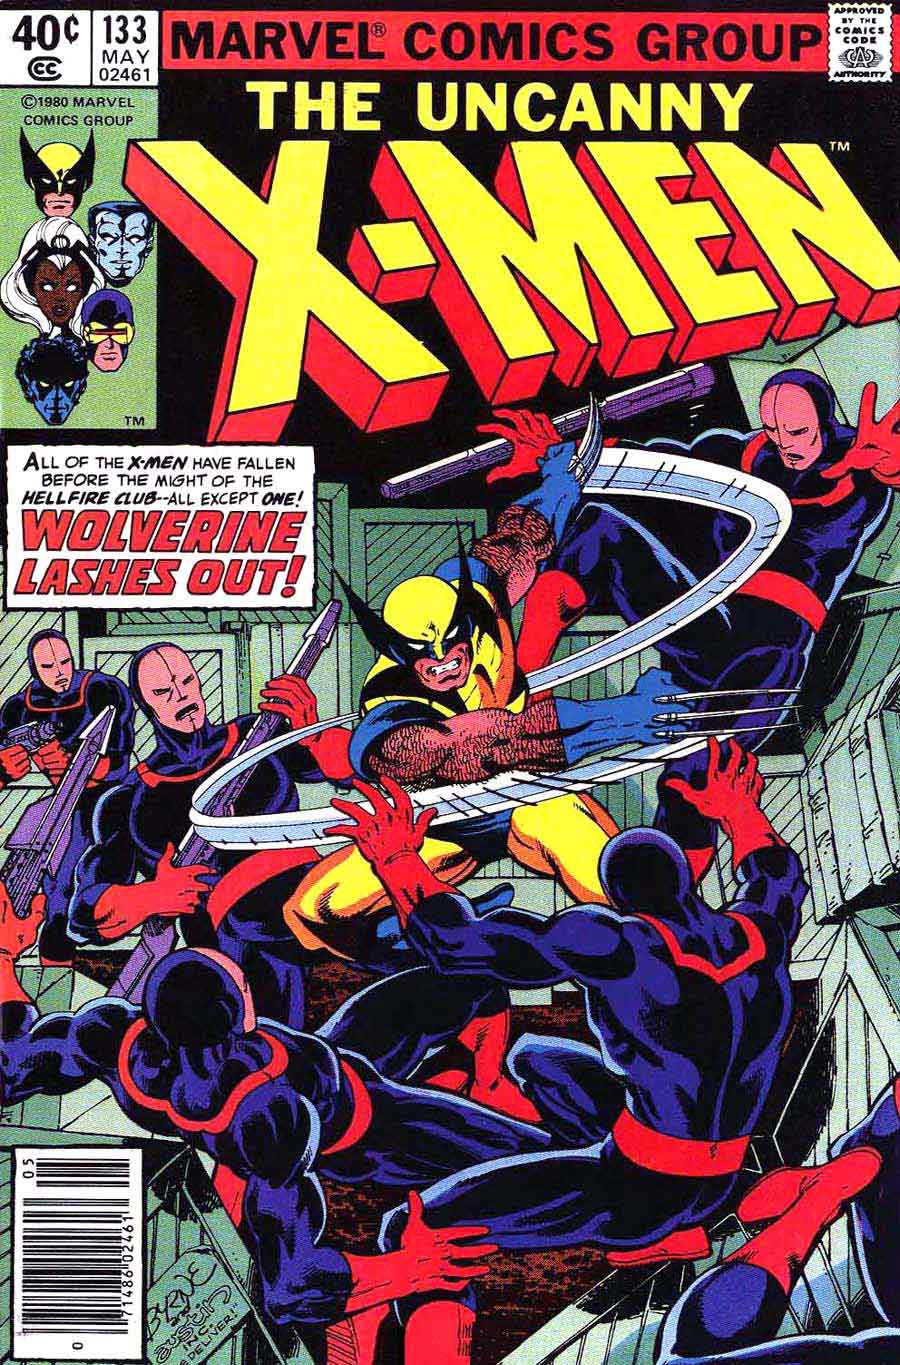 X-men v1 #133 marvel comic book cover art by John Byrne